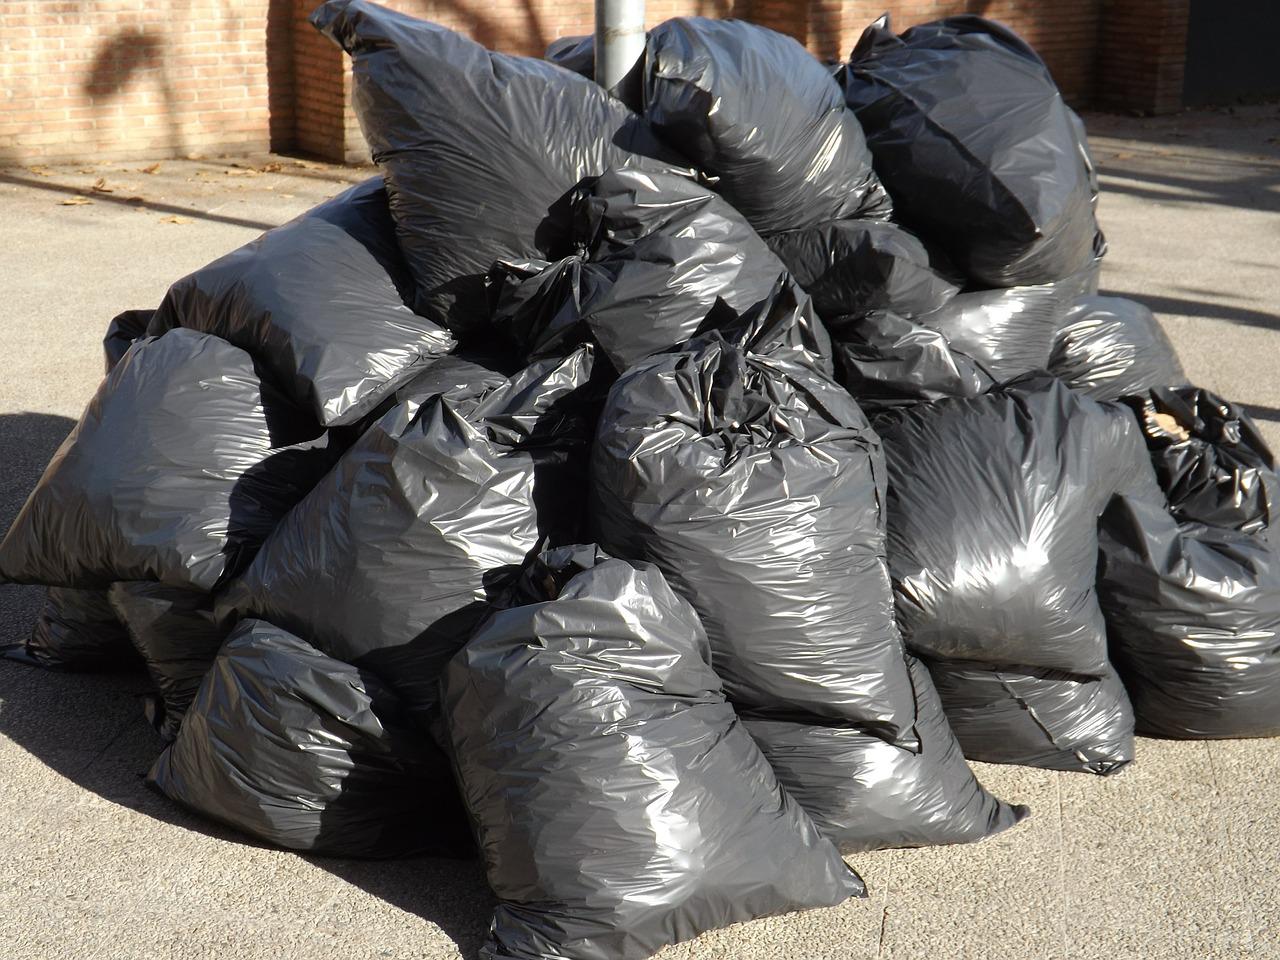 Raspored odnošenja kabastog otpada  za naredne dane u Pančevu